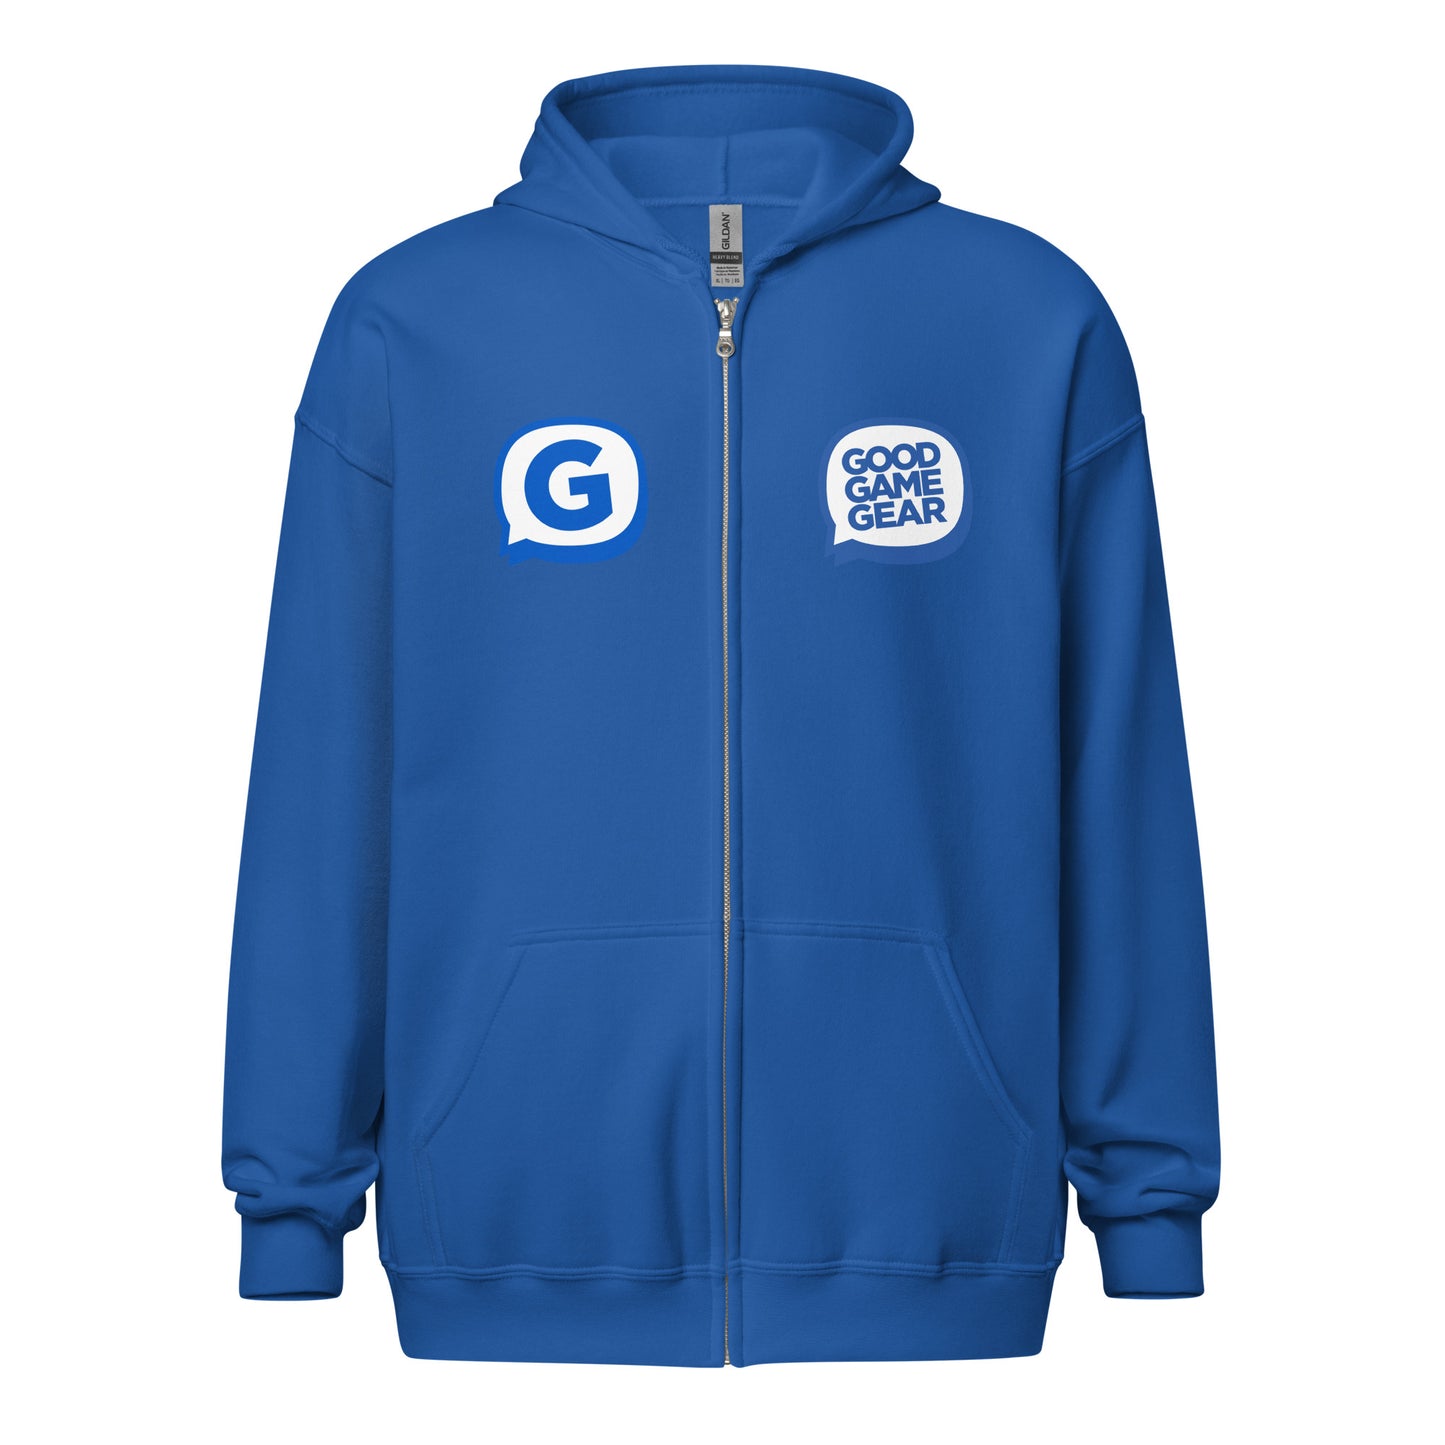 GGG - Unisex heavy blend zip hoodie